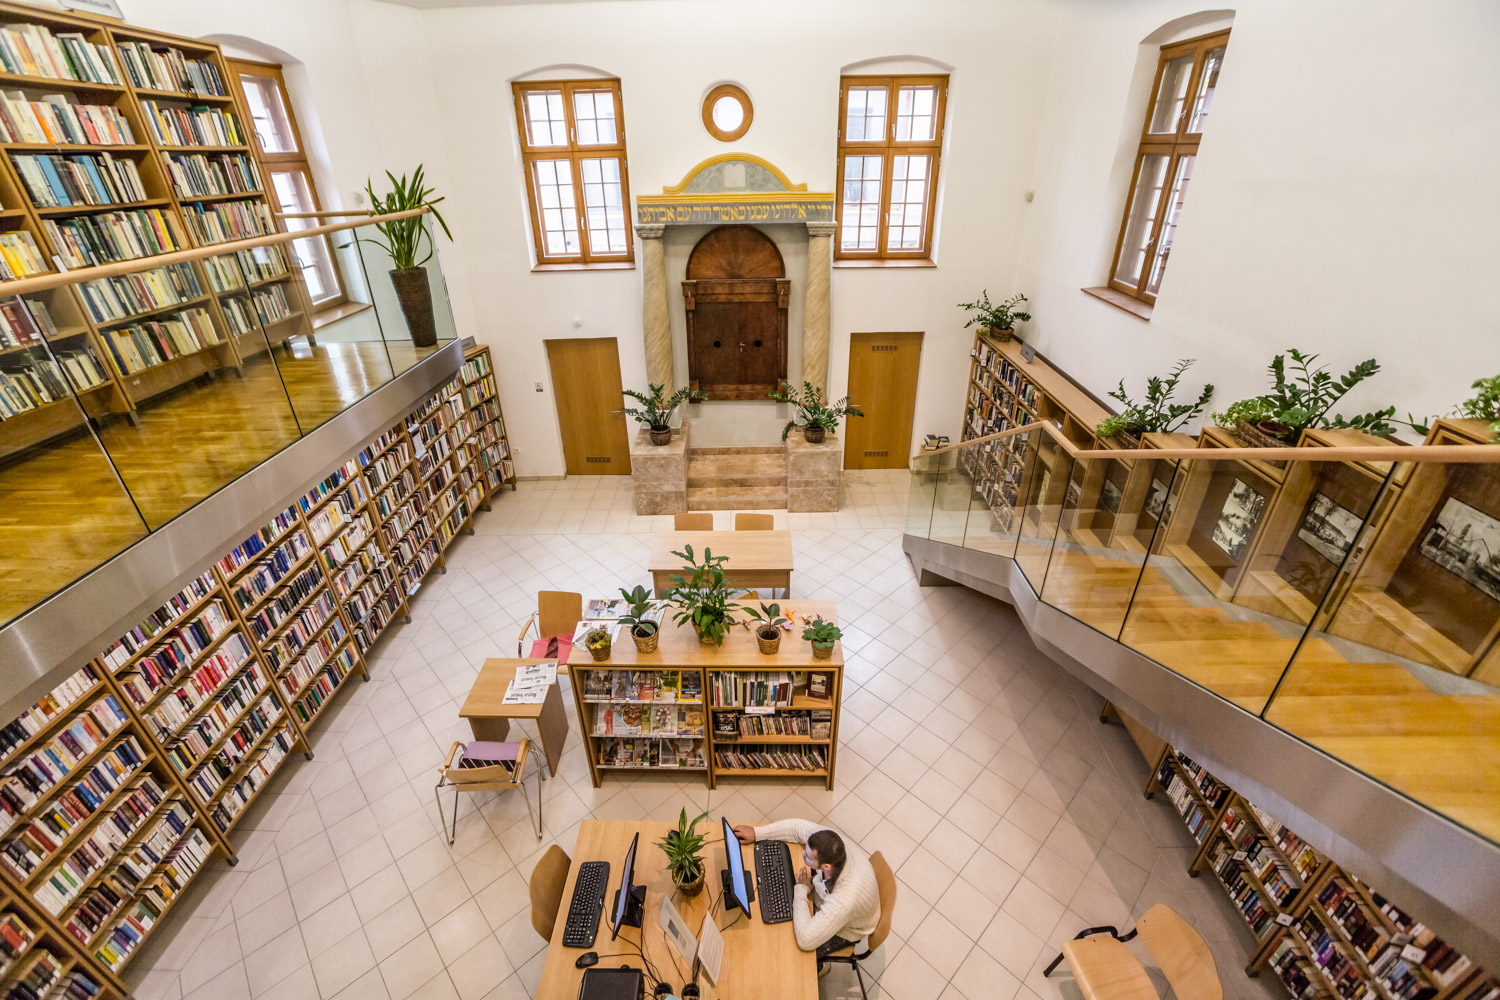 5 akácfa őrzi az egykori zsinagógából lett könyvtárat Nagytétényben